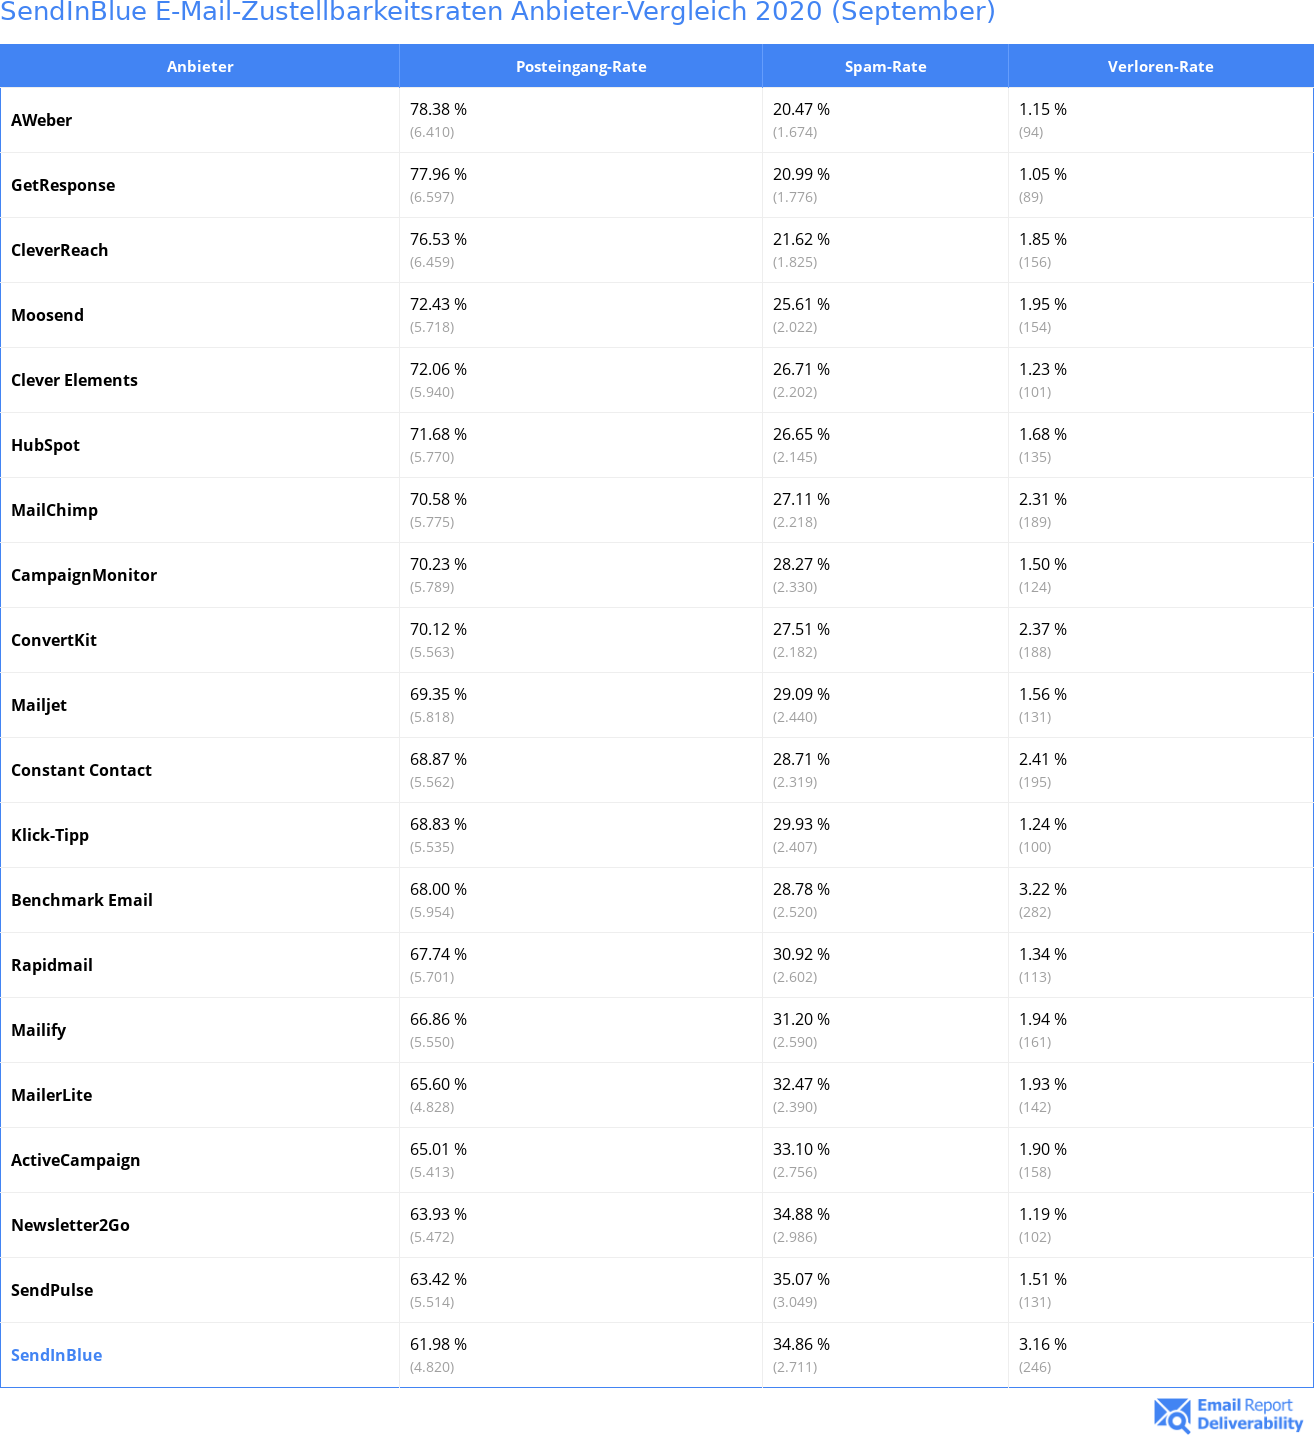 SendInBlue E-Mail-Zustellbarkeitsraten Anbieter-Vergleich 2020 (September)